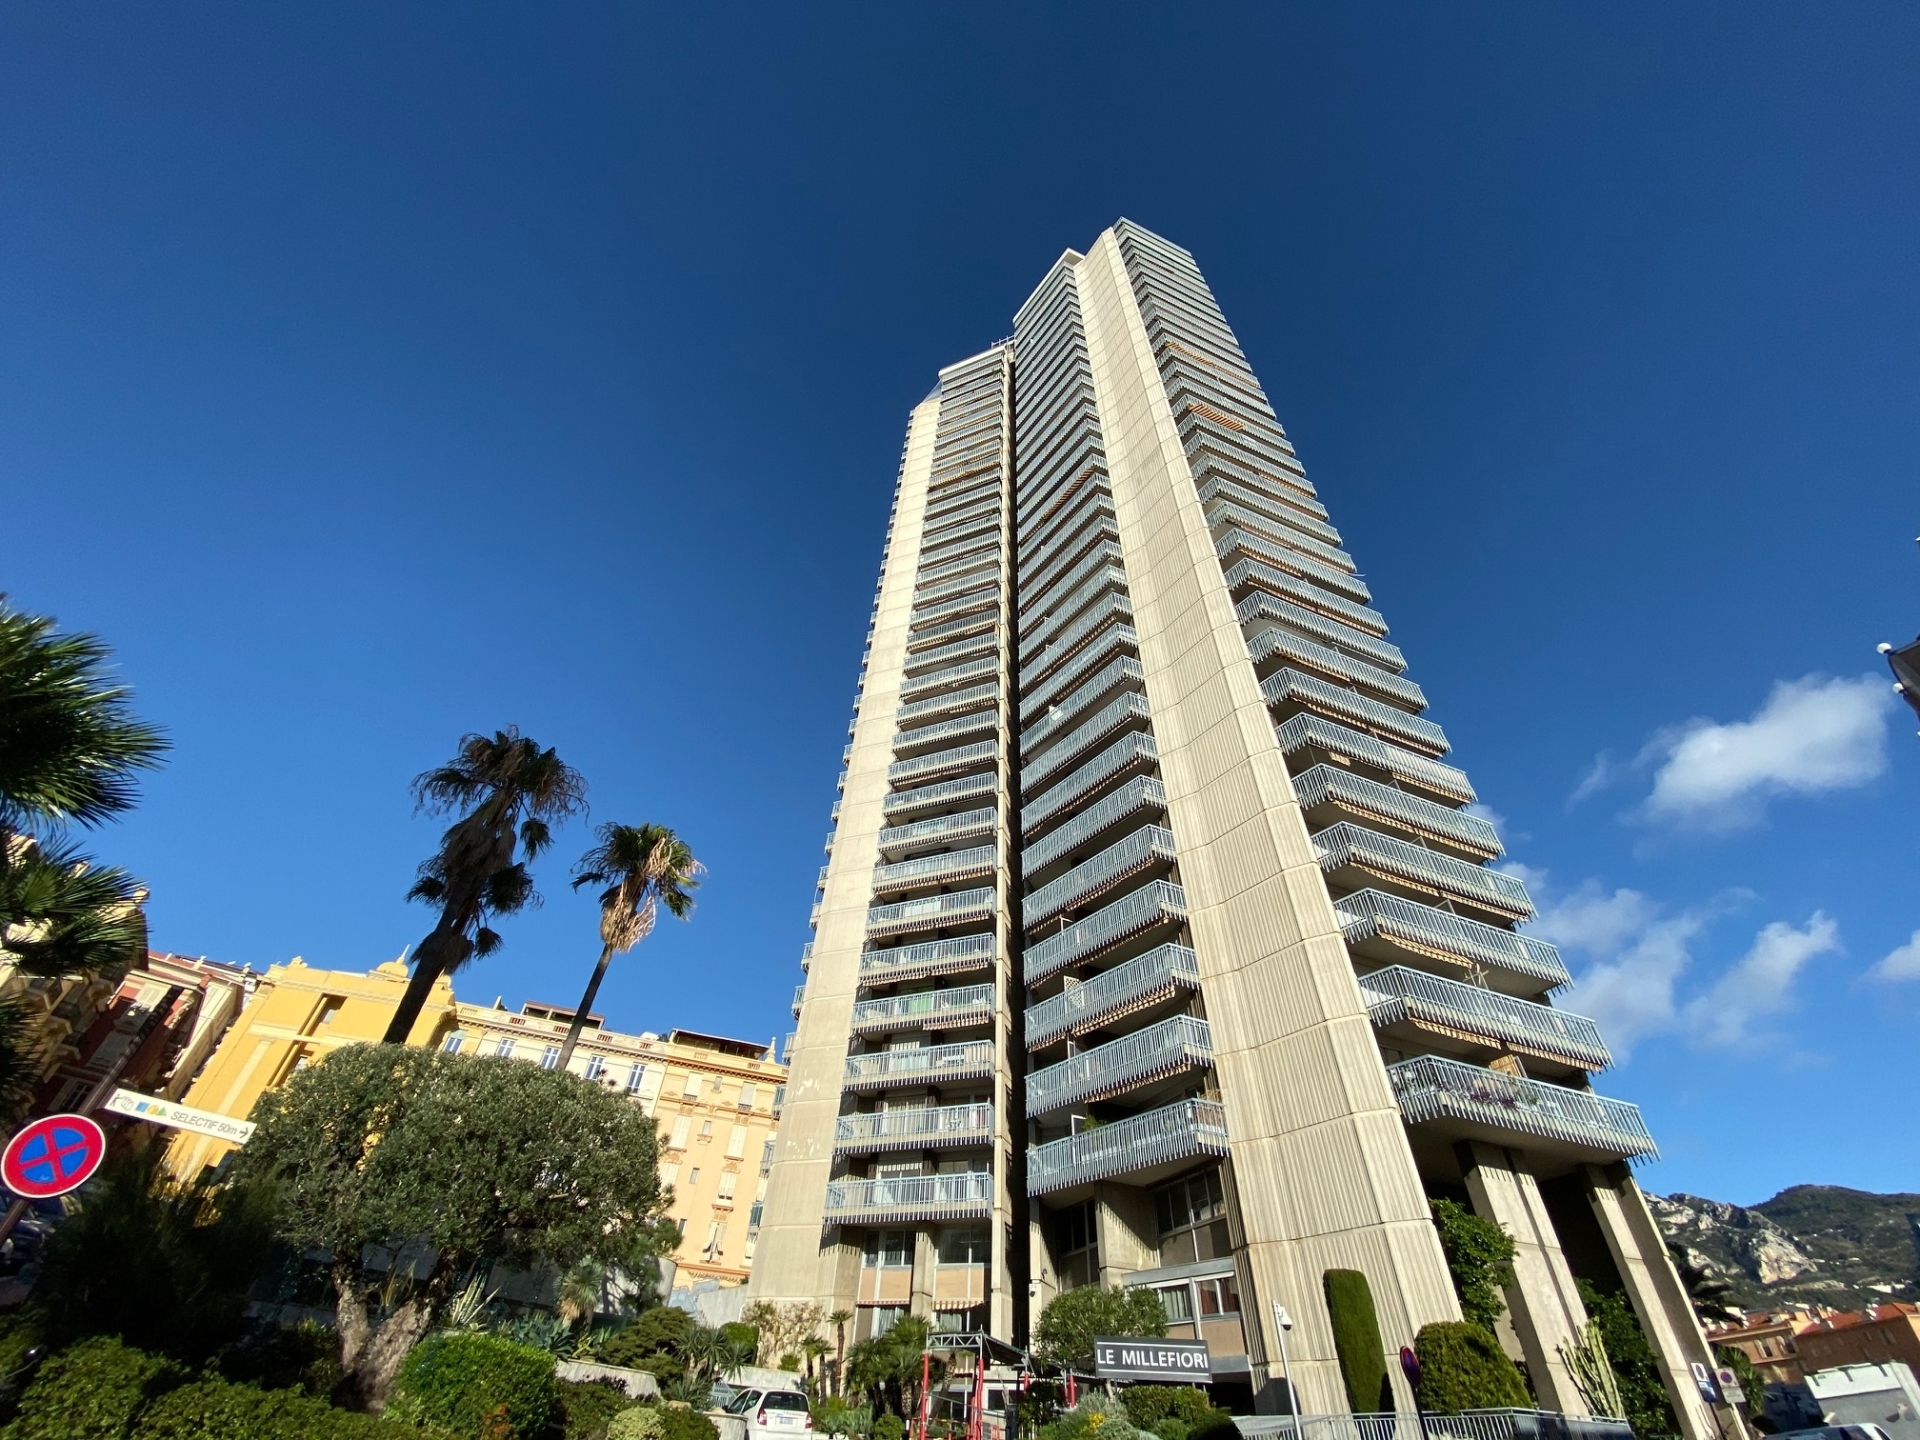 Dotta 3 rooms apartment for sale - MILLEFIORI - Monte-Carlo - Monaco - img1675